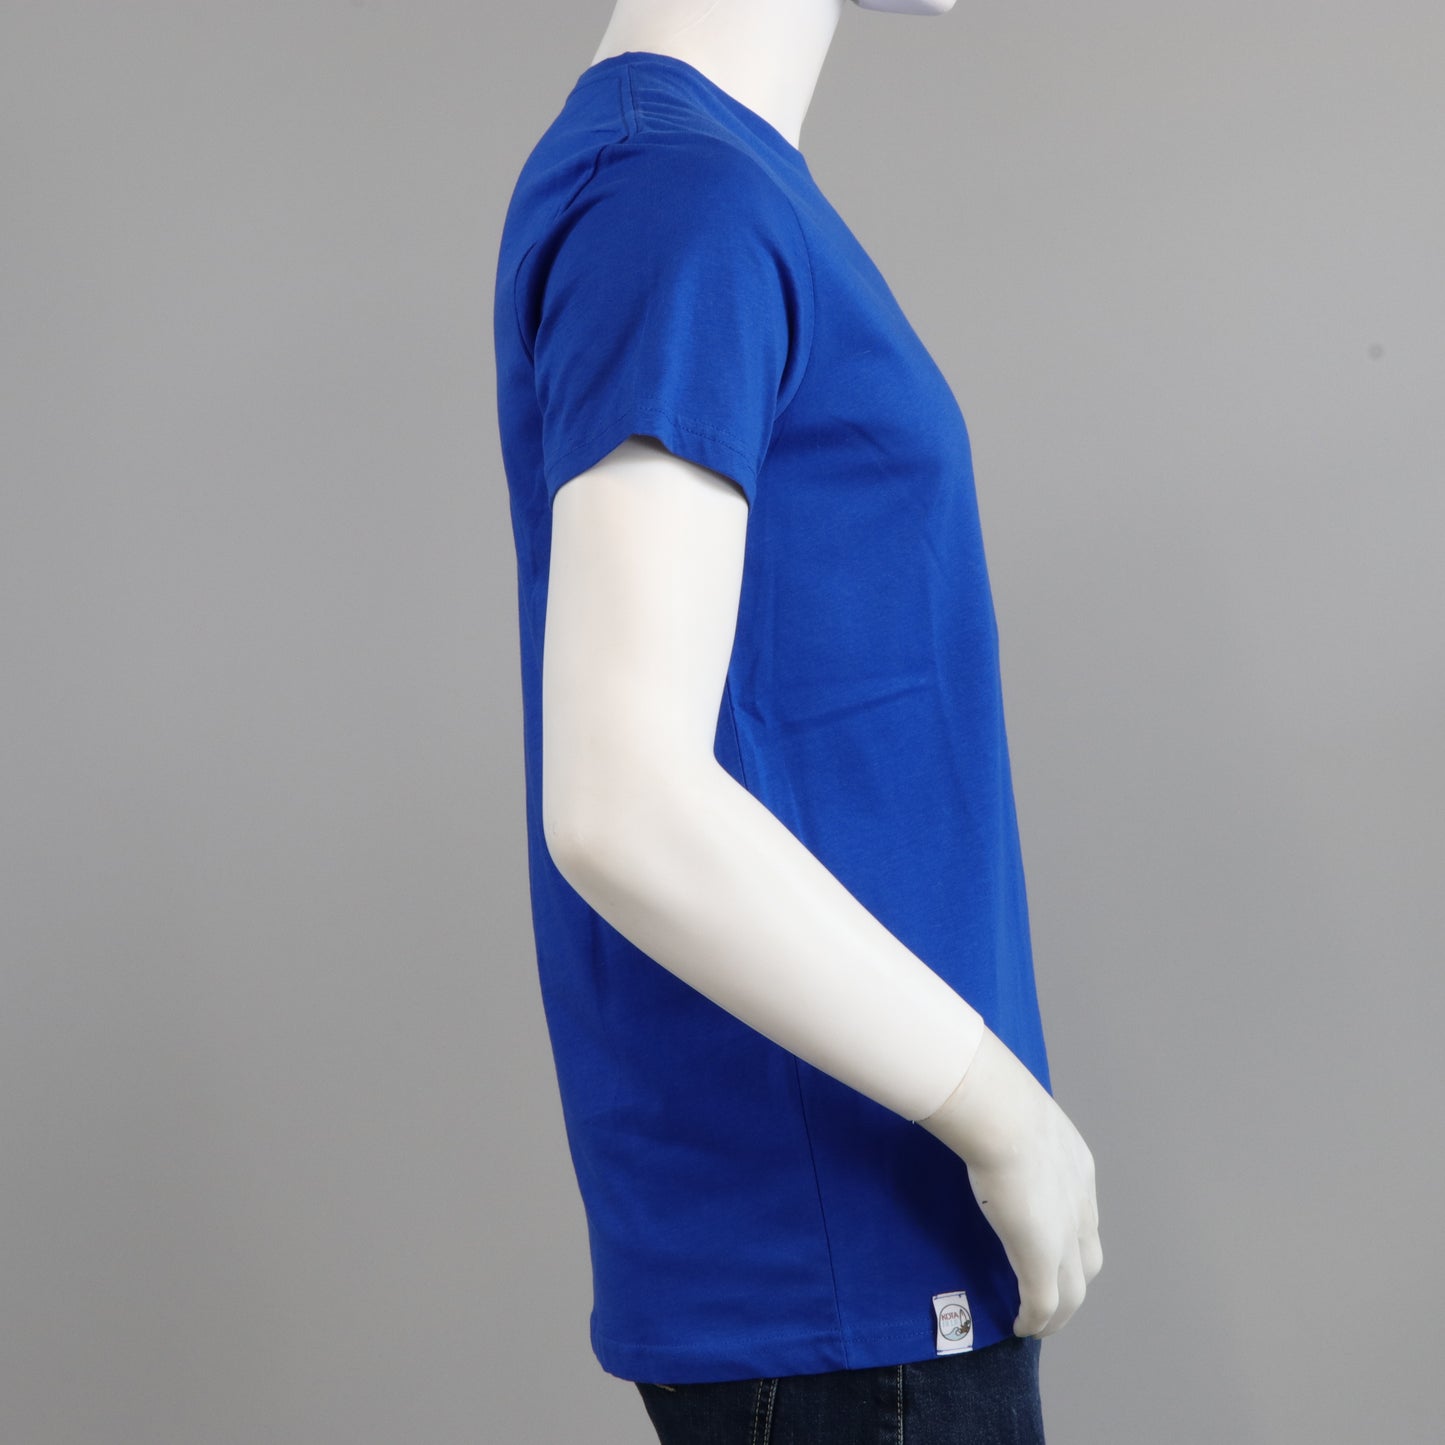 T-shirt Homme bleu roi en coton bio - "Cardinale"